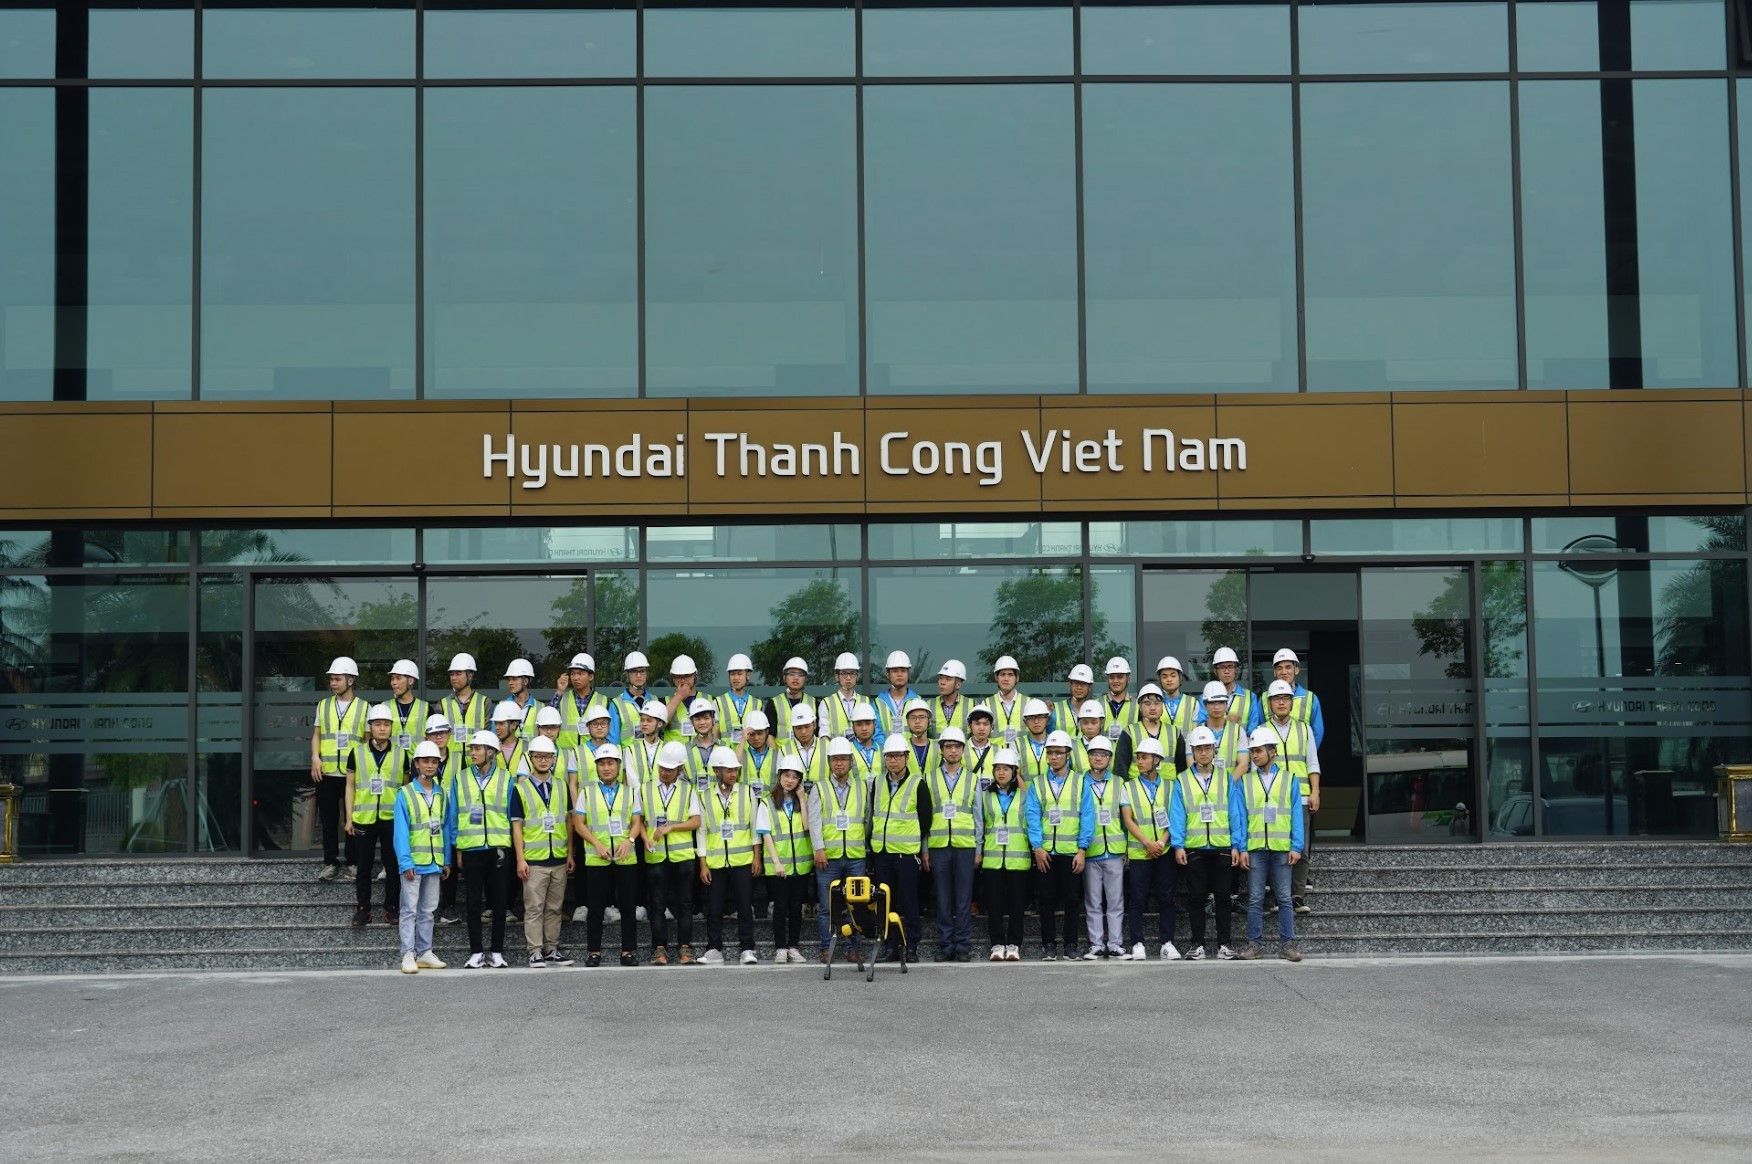 Hyundai Thành Công triển khai tuần thực tế dành cho sinh viên chuyên ngành kỹ thuật ô tô